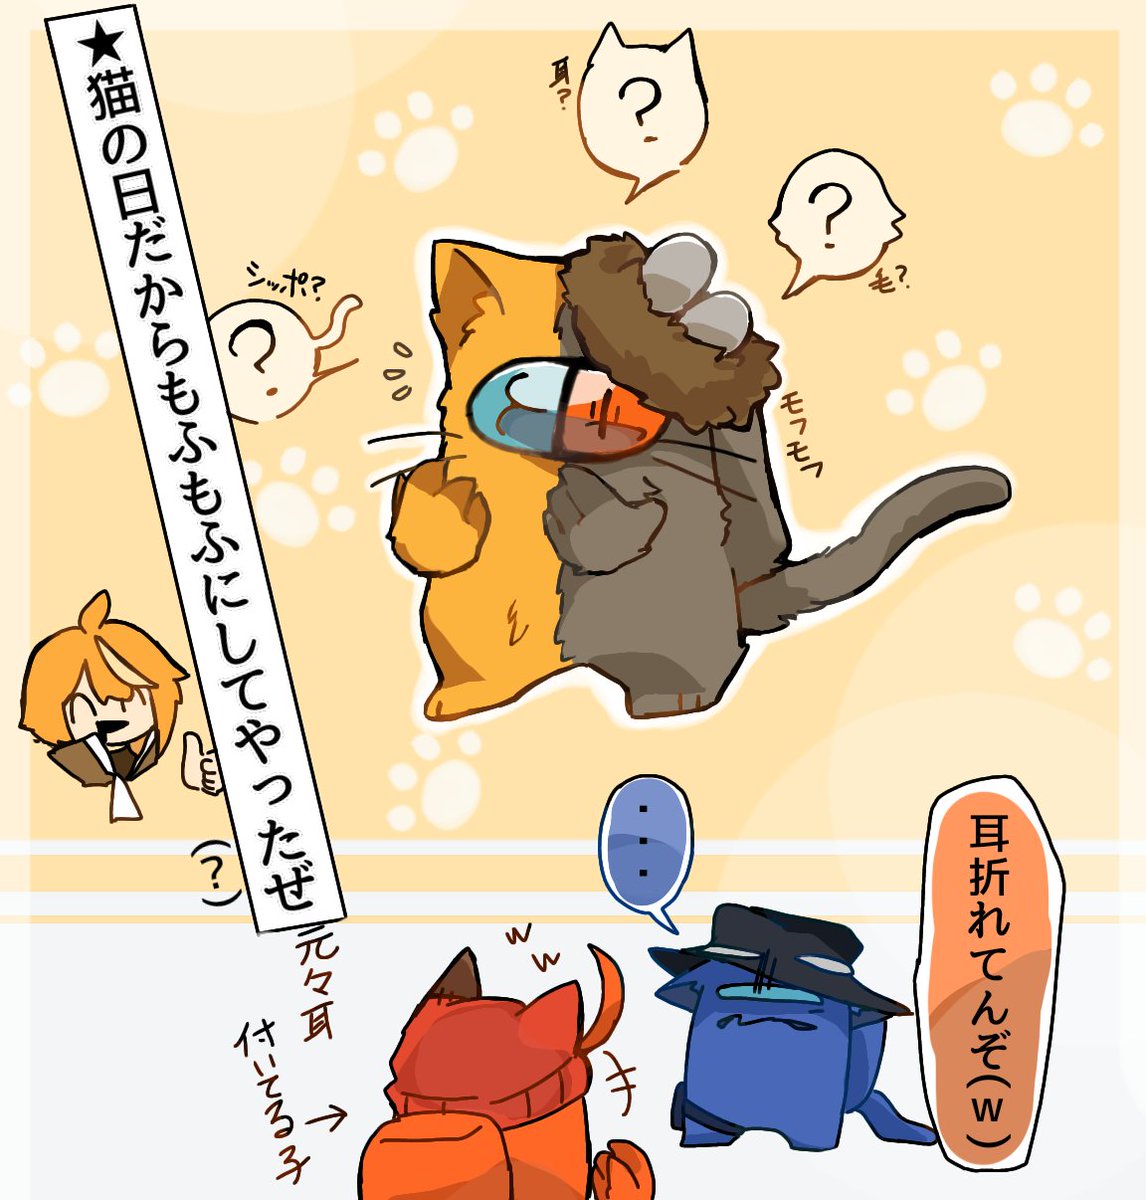 猫の日!ฅ^.  ̫ .^ฅ🐾
こんなもんでいいかな?(((雑
 #amongusOC 